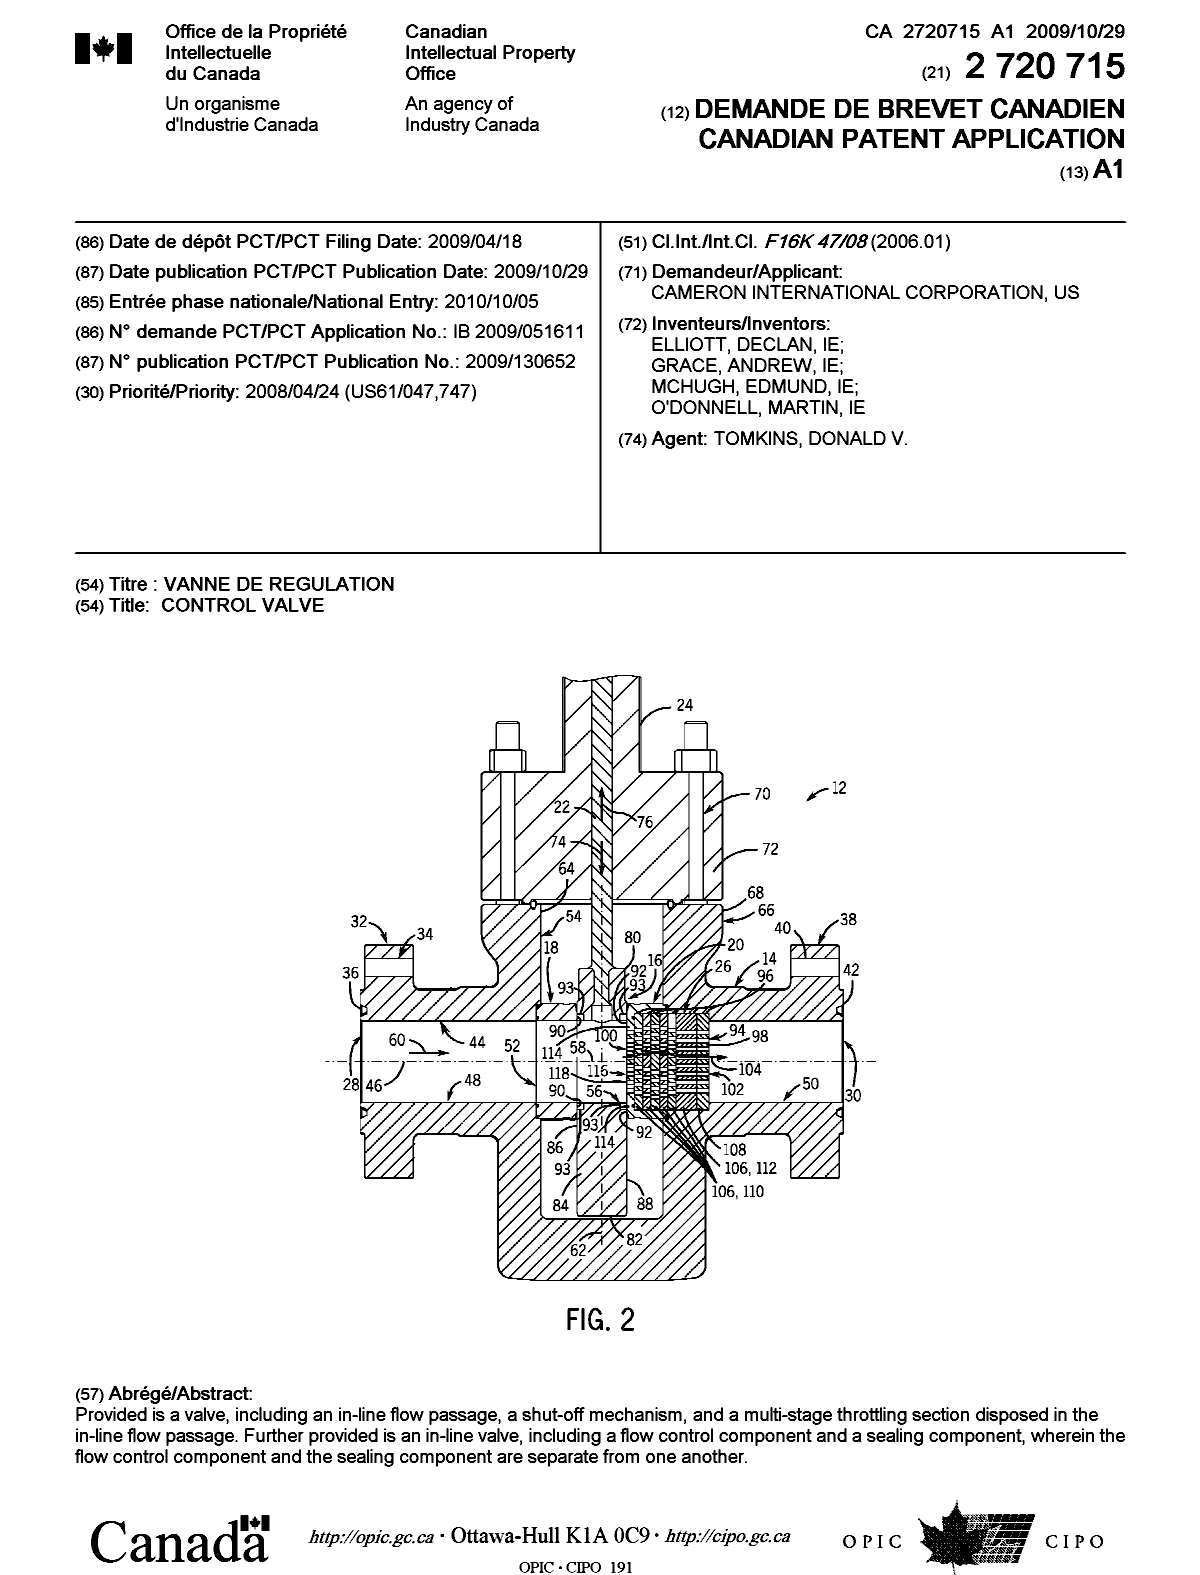 Document de brevet canadien 2720715. Page couverture 20110106. Image 1 de 1